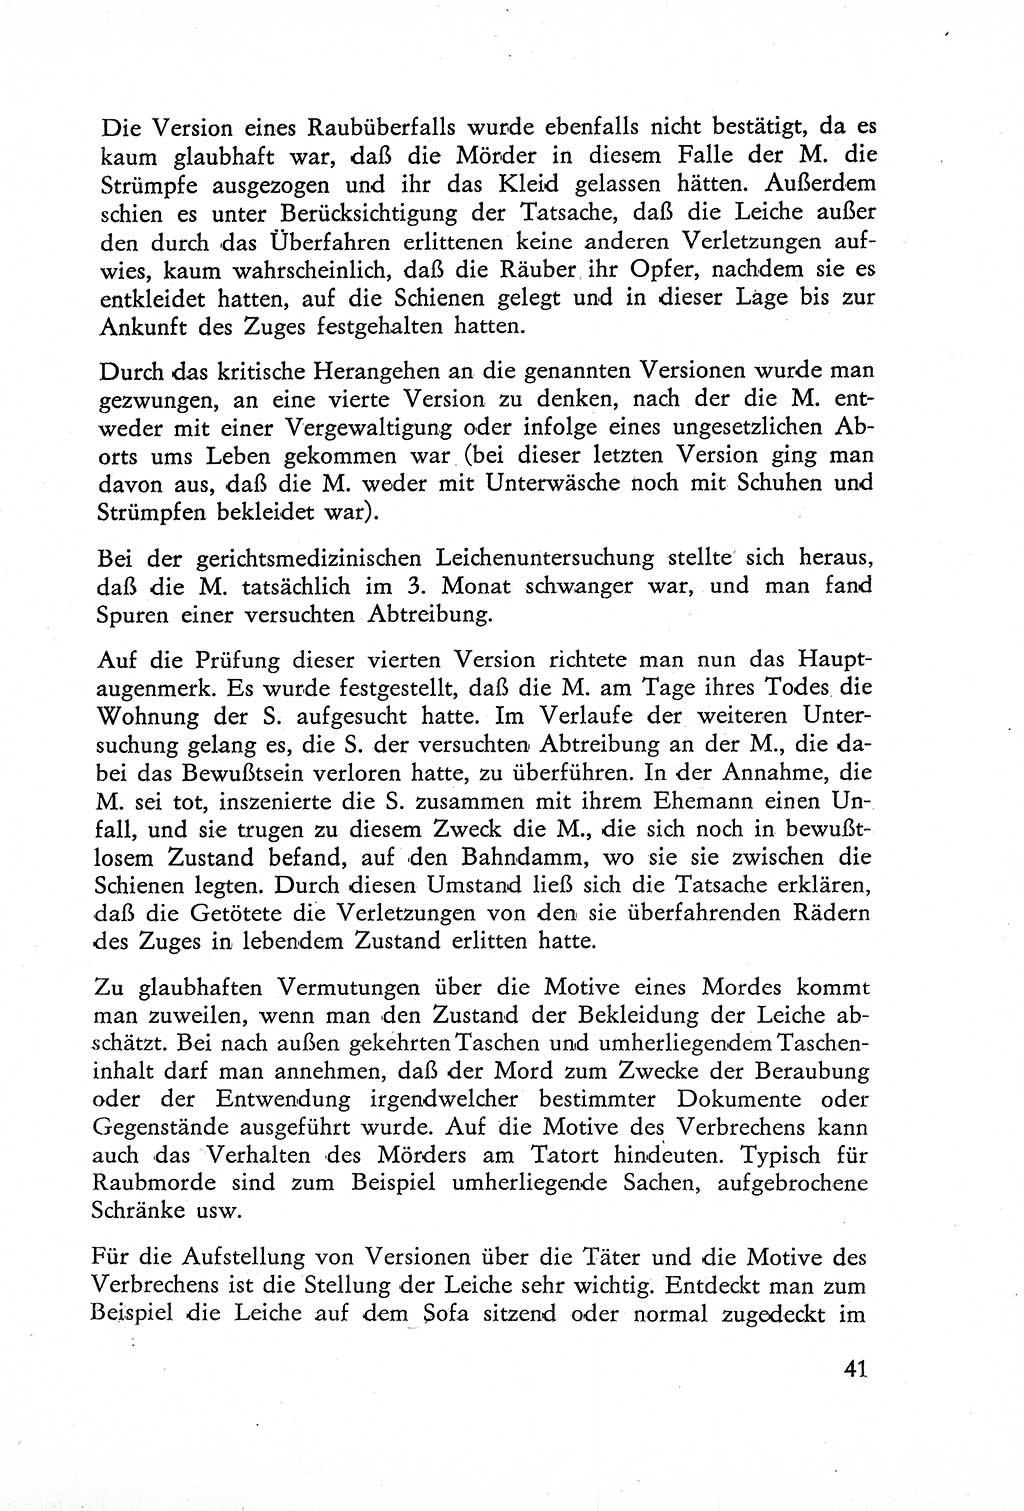 Die Untersuchung einzelner Verbrechensarten [Deutsche Demokratische Republik (DDR)] 1960, Seite 41 (Unters. Verbr.-Art. DDR 1960, S. 41)